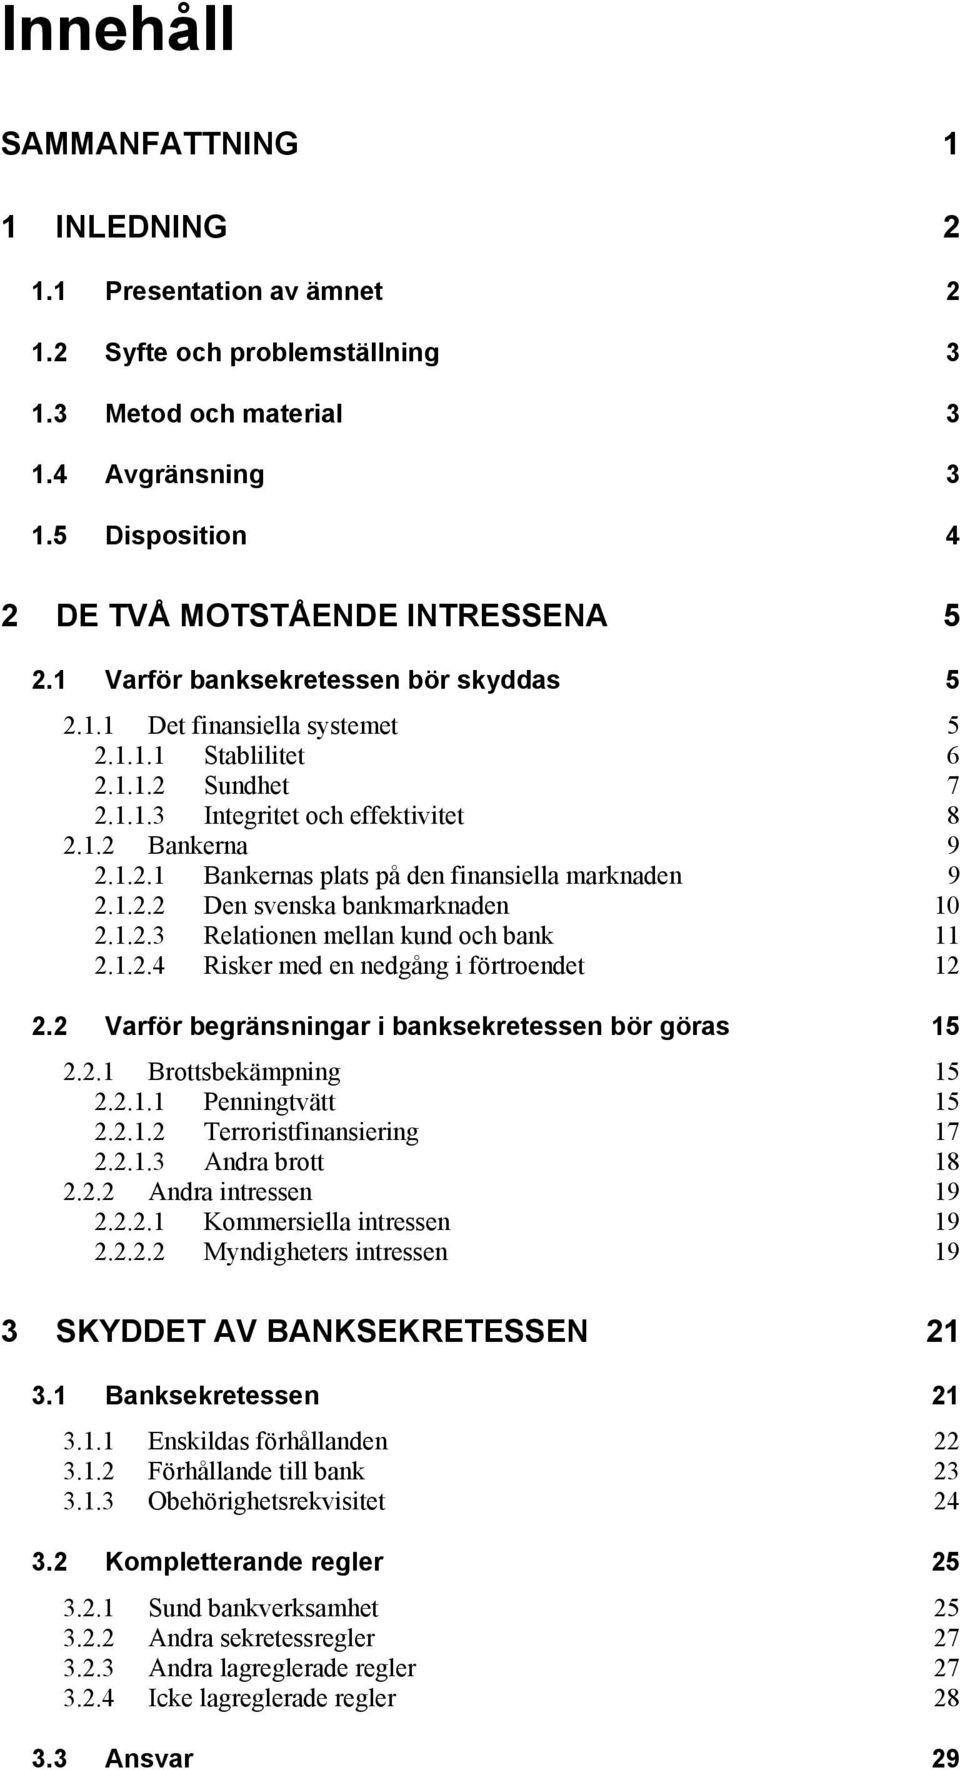 1.2.2 Den svenska bankmarknaden 10 2.1.2.3 Relationen mellan kund och bank 11 2.1.2.4 Risker med en nedgång i förtroendet 12 2.2 Varför begränsningar i banksekretessen bör göras 15 2.2.1 Brottsbekämpning 15 2.